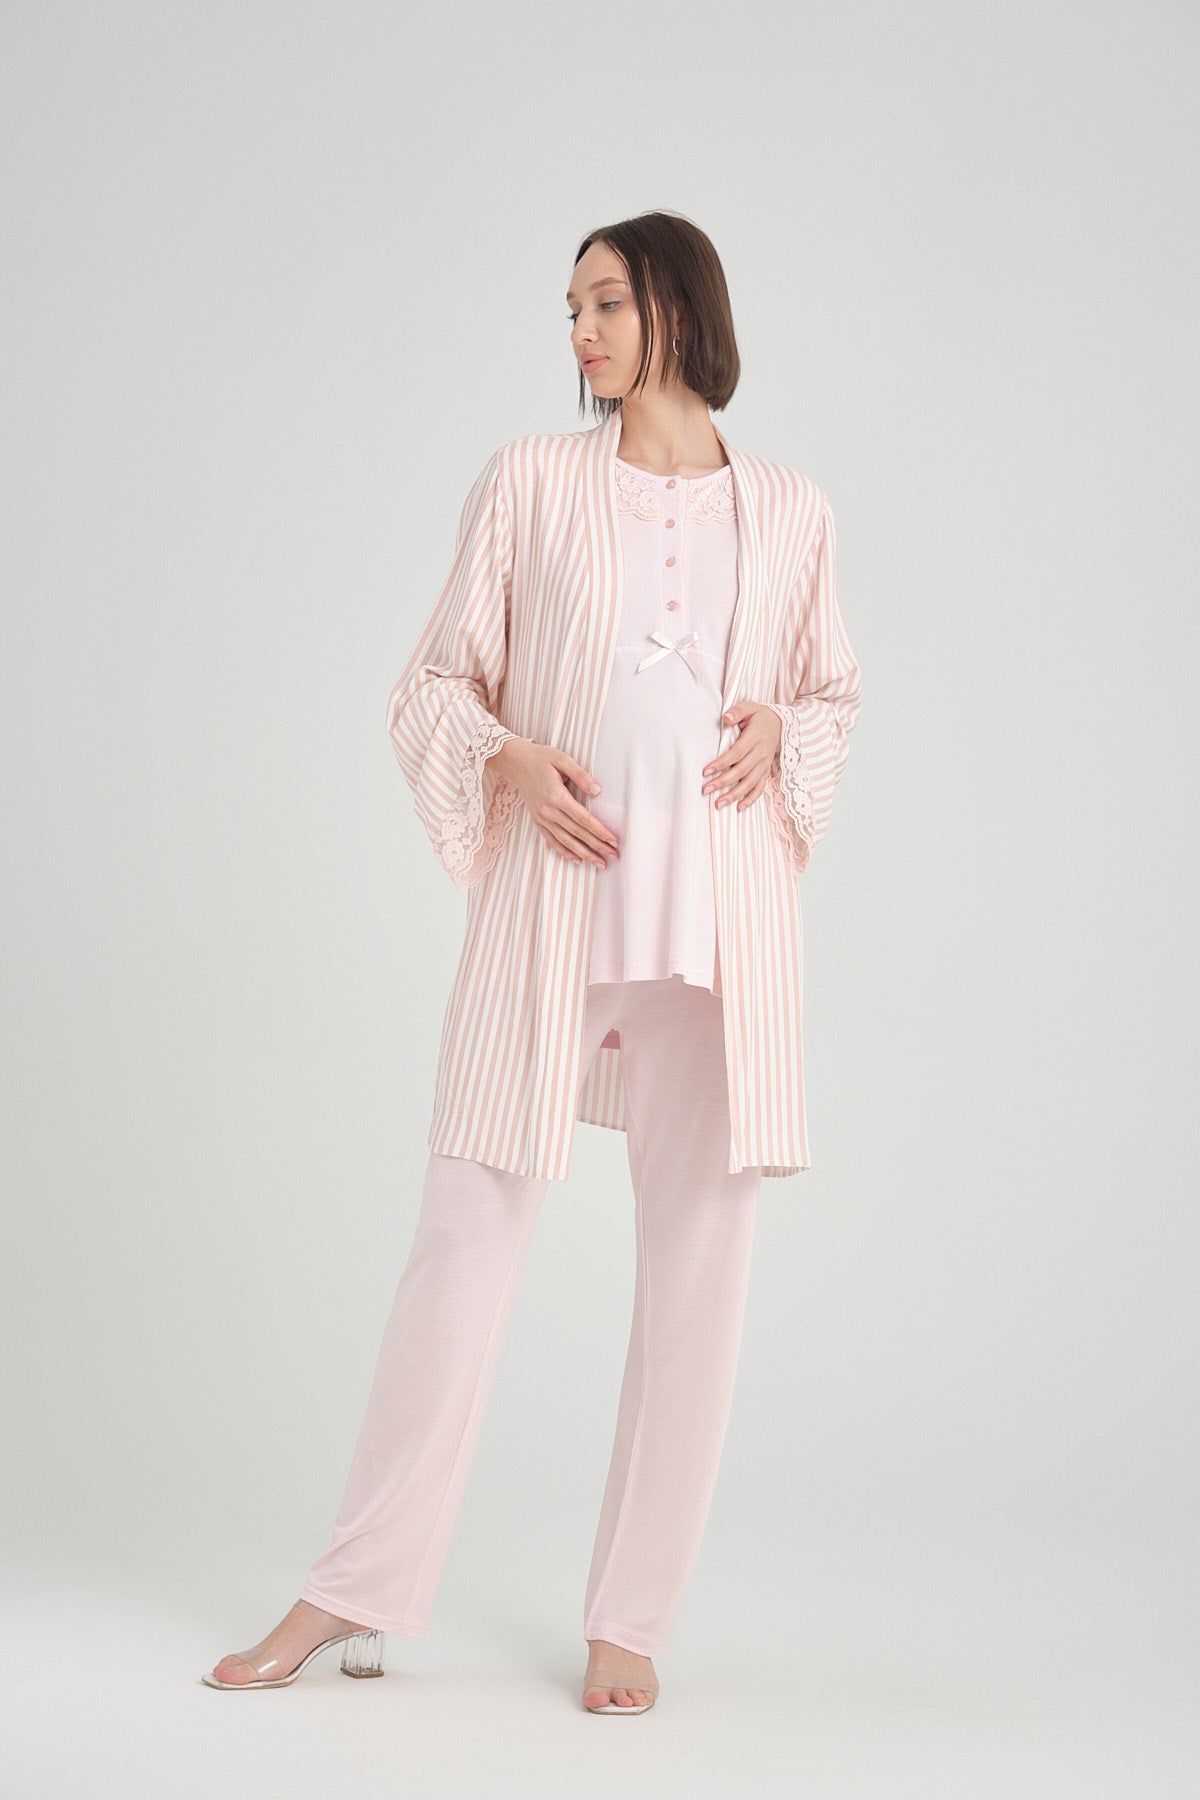 Lace Collar 3-Pieces Maternity & Nursing Pajamas With Stripe Robe Pink - 2369